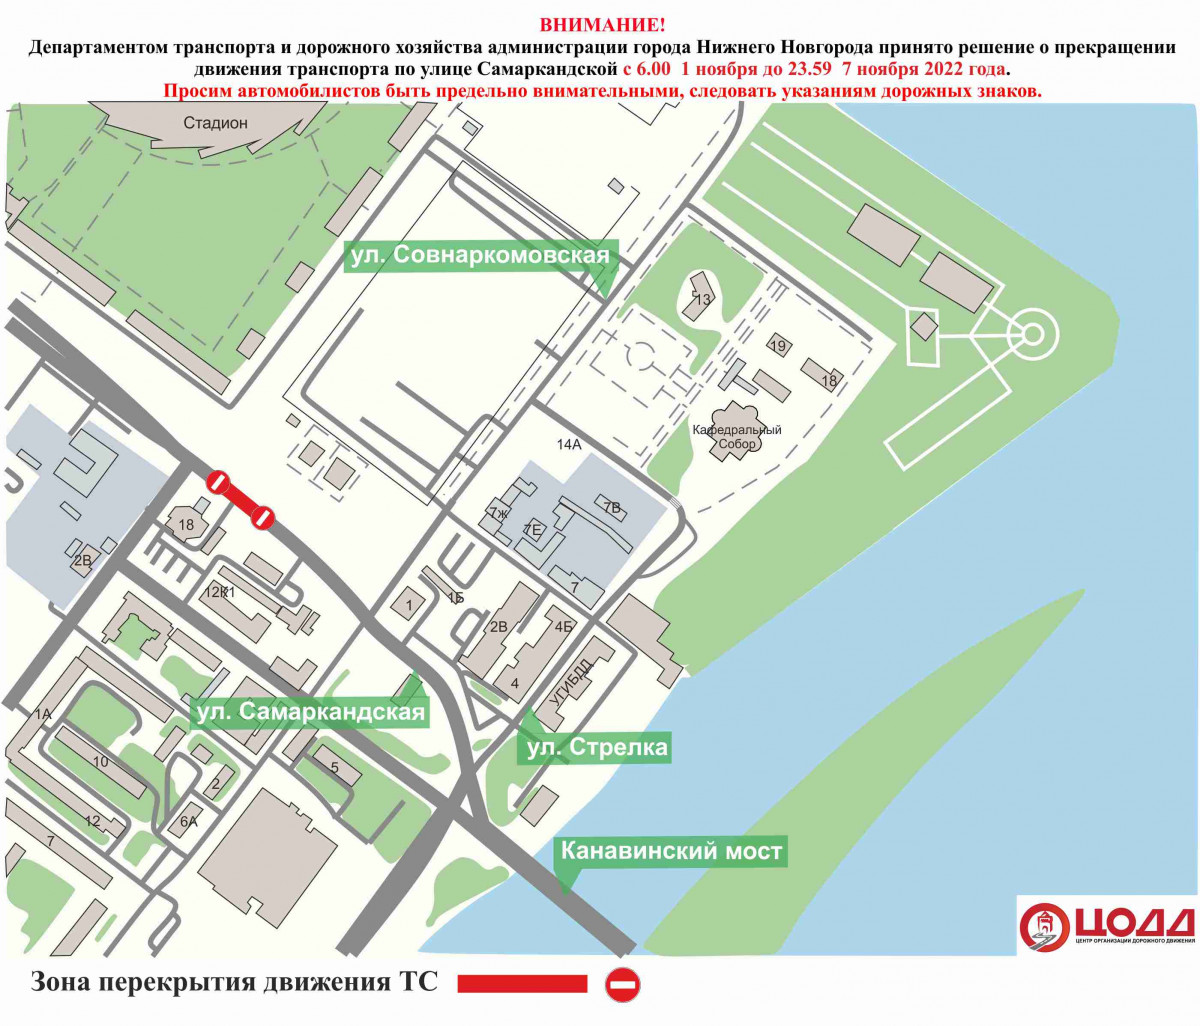 Движение транспорта на участке улицы Самаркандской ограничат с 1 по 7 ноября